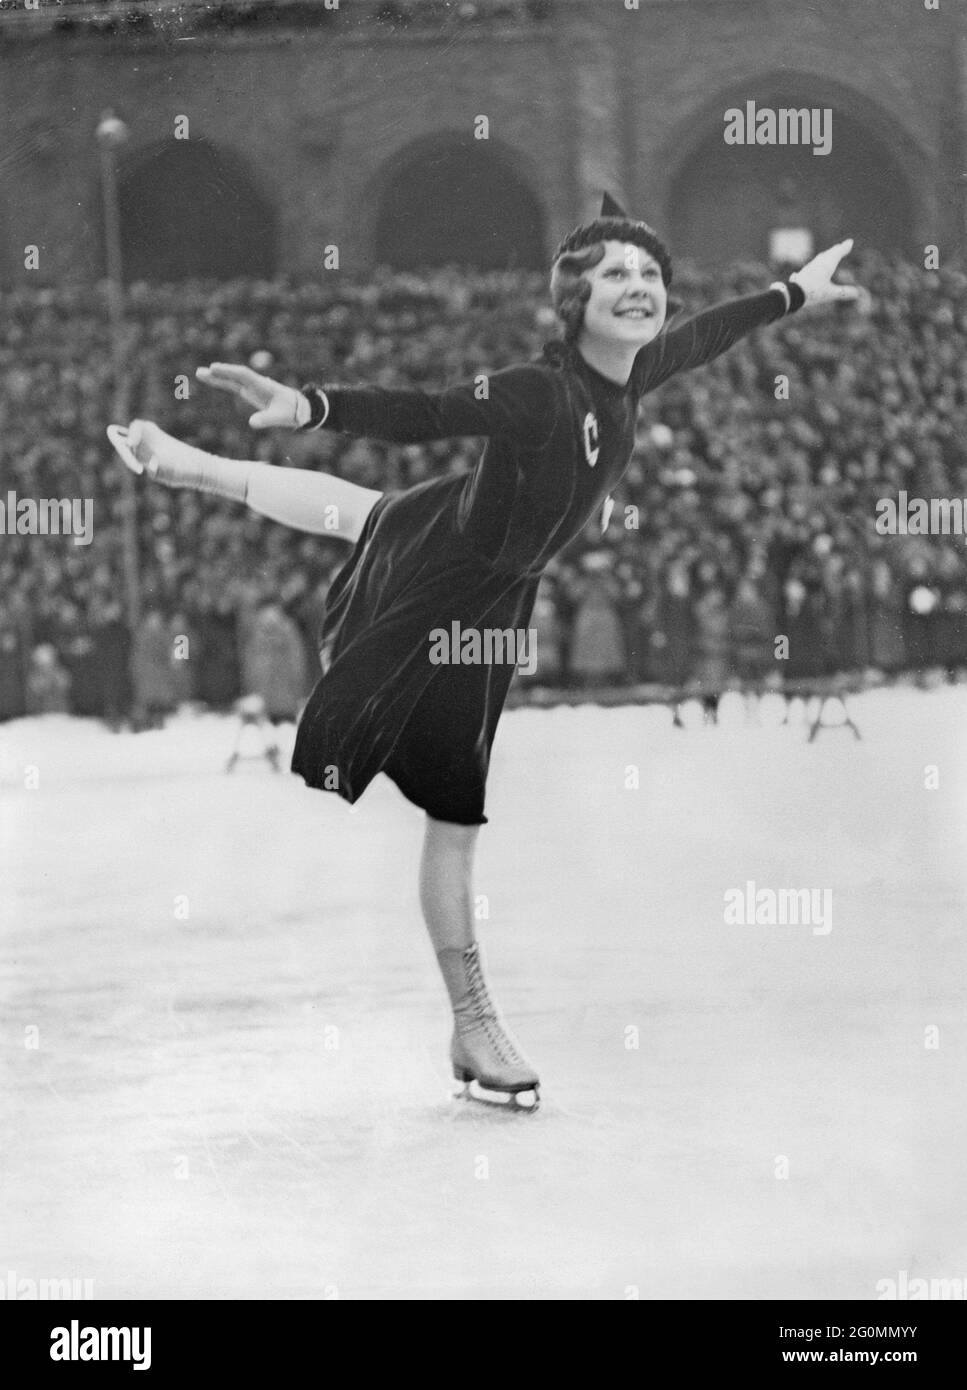 Sonja Henie. Norwegischer Eiskunstlauf-Champion, geboren am 8. april tot am 12 1969. oktober. Im Bild während der Teilnahme an der Eislaufweltmeisterschaft am 13 1933. februar im Stockholms-Stadion. Stockfoto